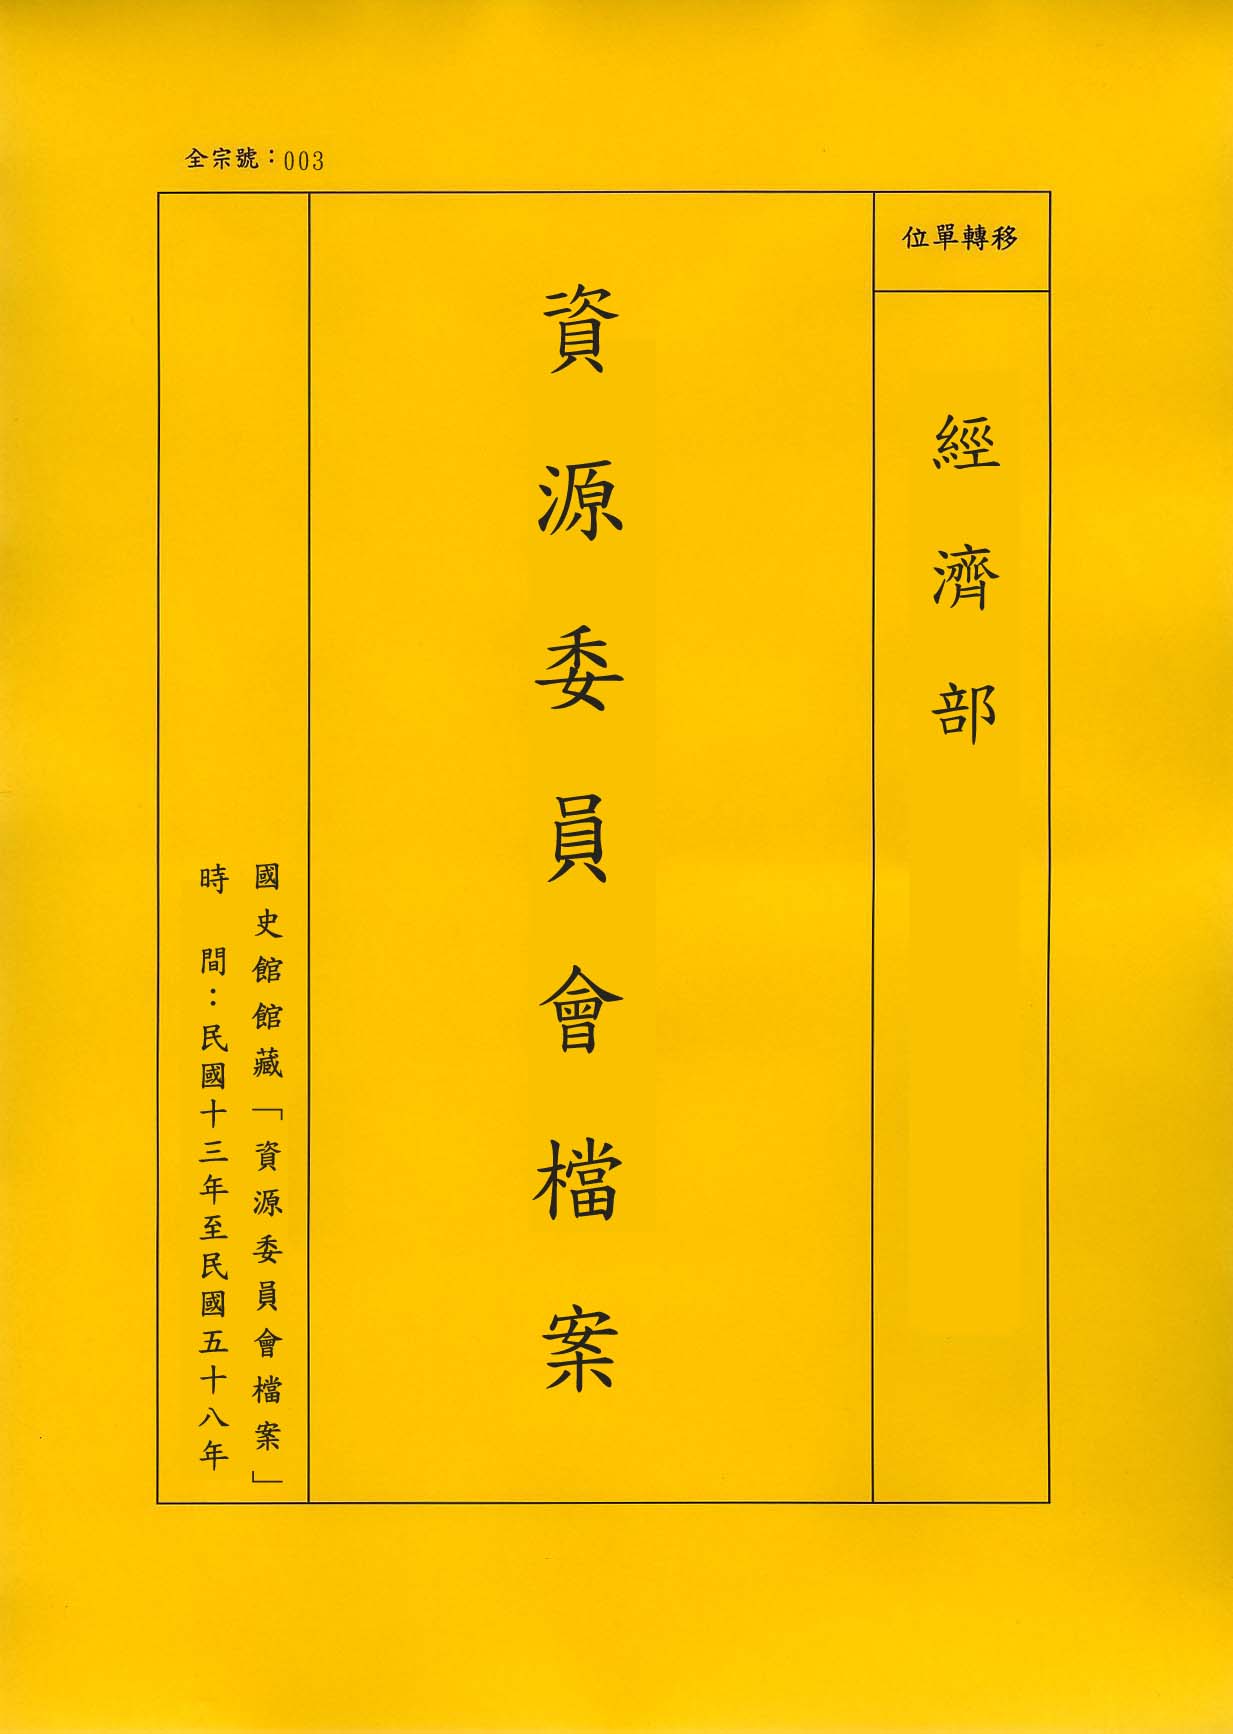 卷名:天津市經濟事業或同業公會名冊及重要商業調查表(003-010306-0422)